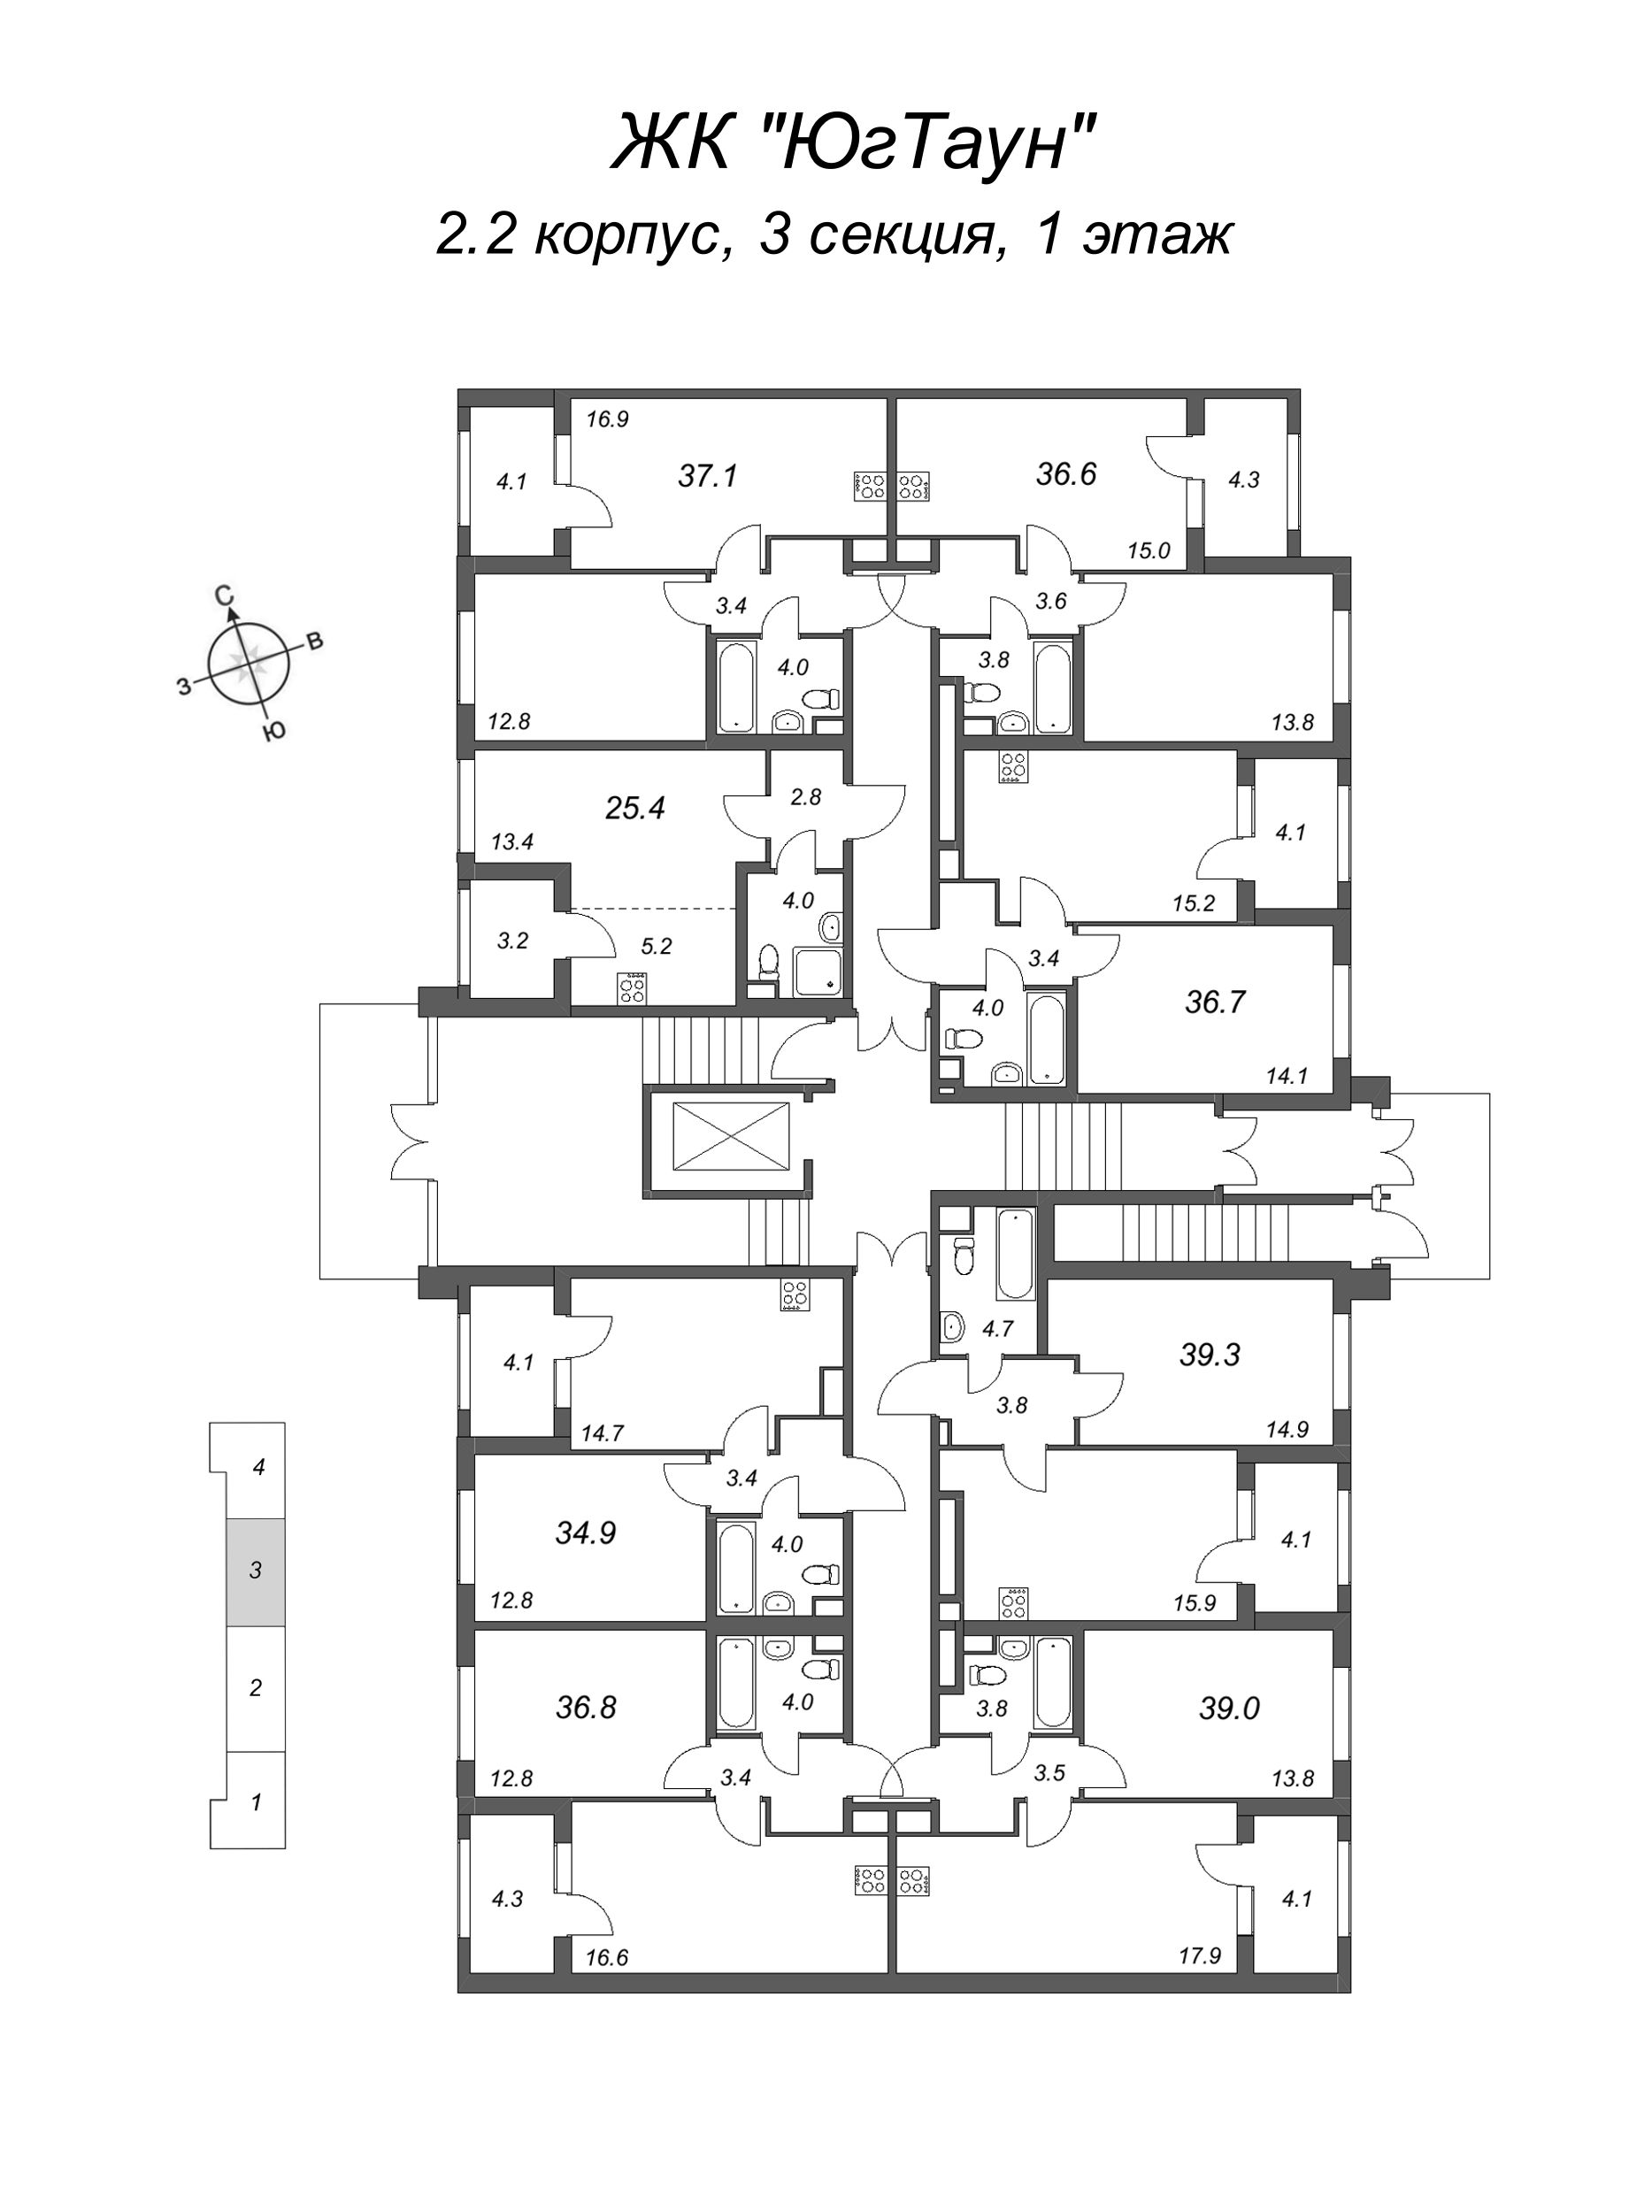 2-комнатная (Евро) квартира, 36.6 м² в ЖК "ЮгТаун" - планировка этажа